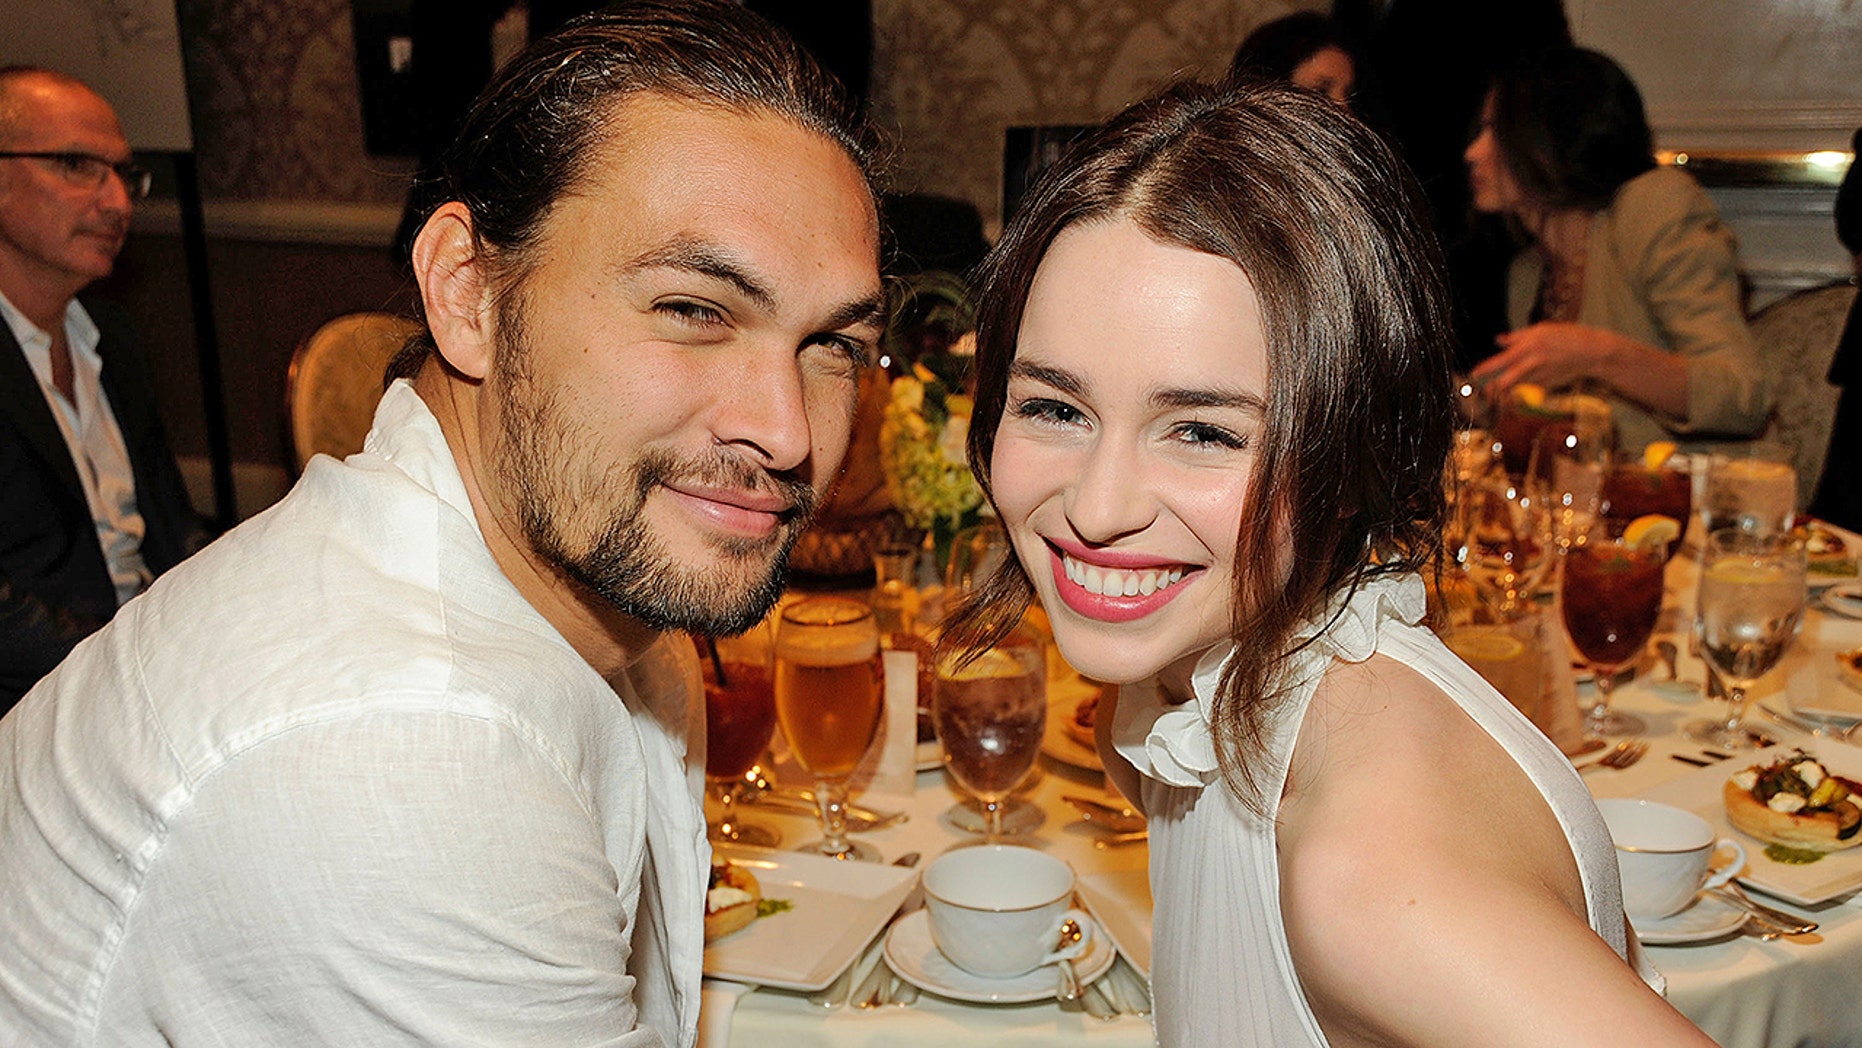 Jason Momoa was devastated when 'Game of Thrones' co-star Emilia Clarke